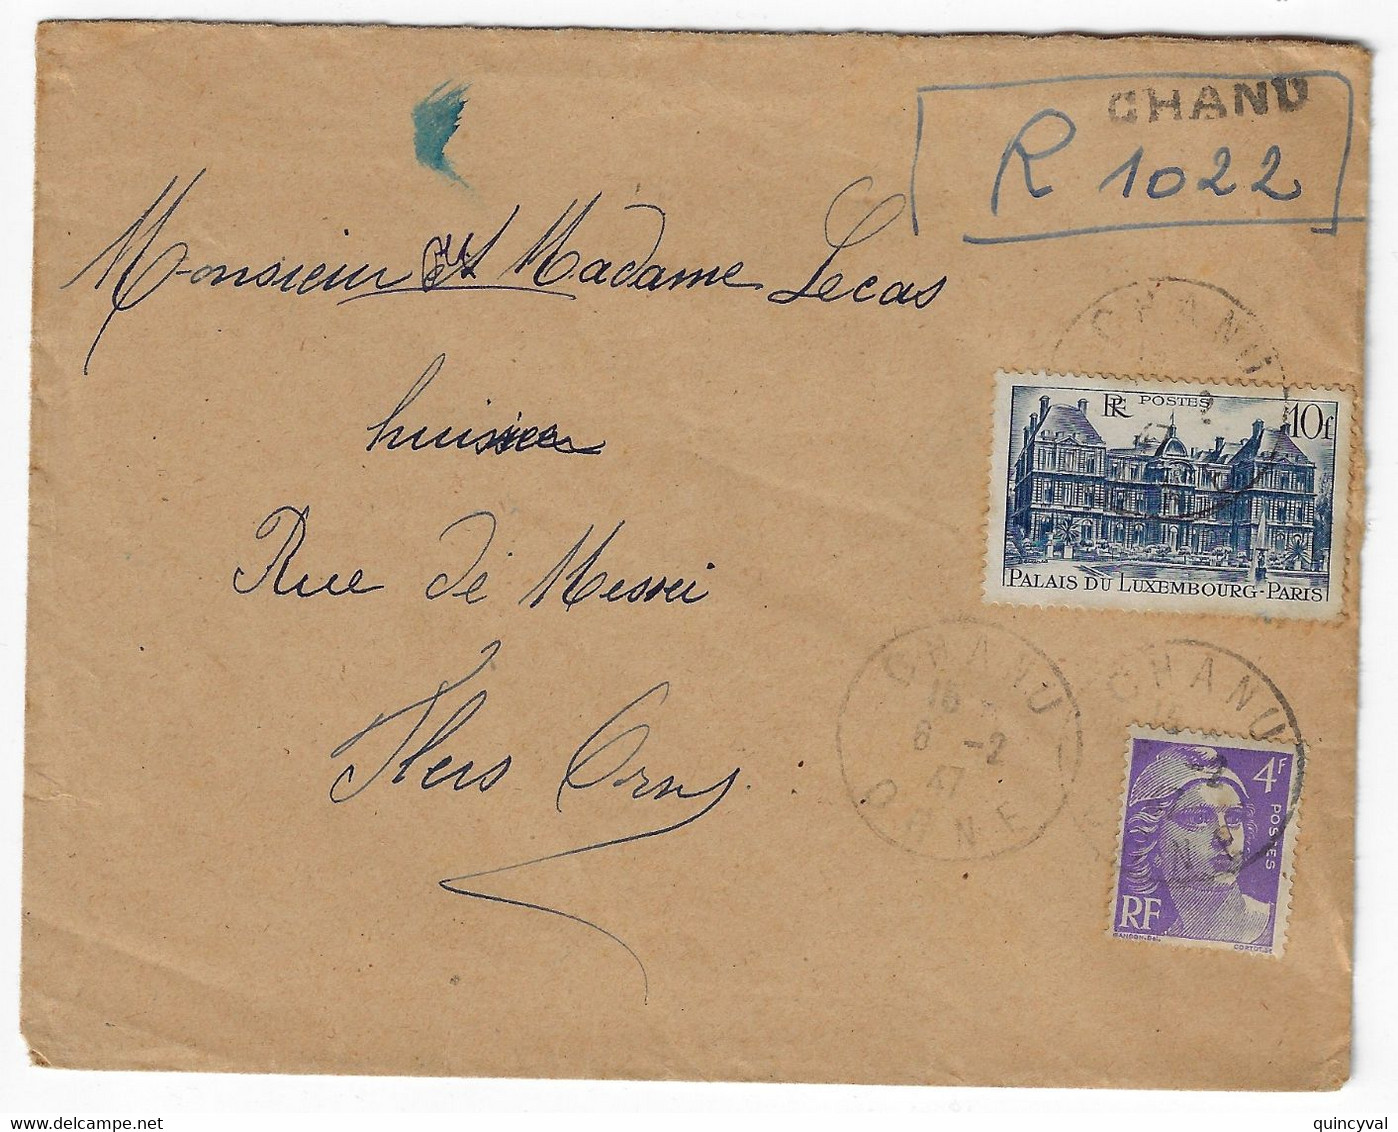 CHANU Orne Lettre Recommandée "Provisoire" Manuscrit 10 F Palais Luxembourg 4 F Violet Yv 760 718 Ob 6 2 1947 - Briefe U. Dokumente